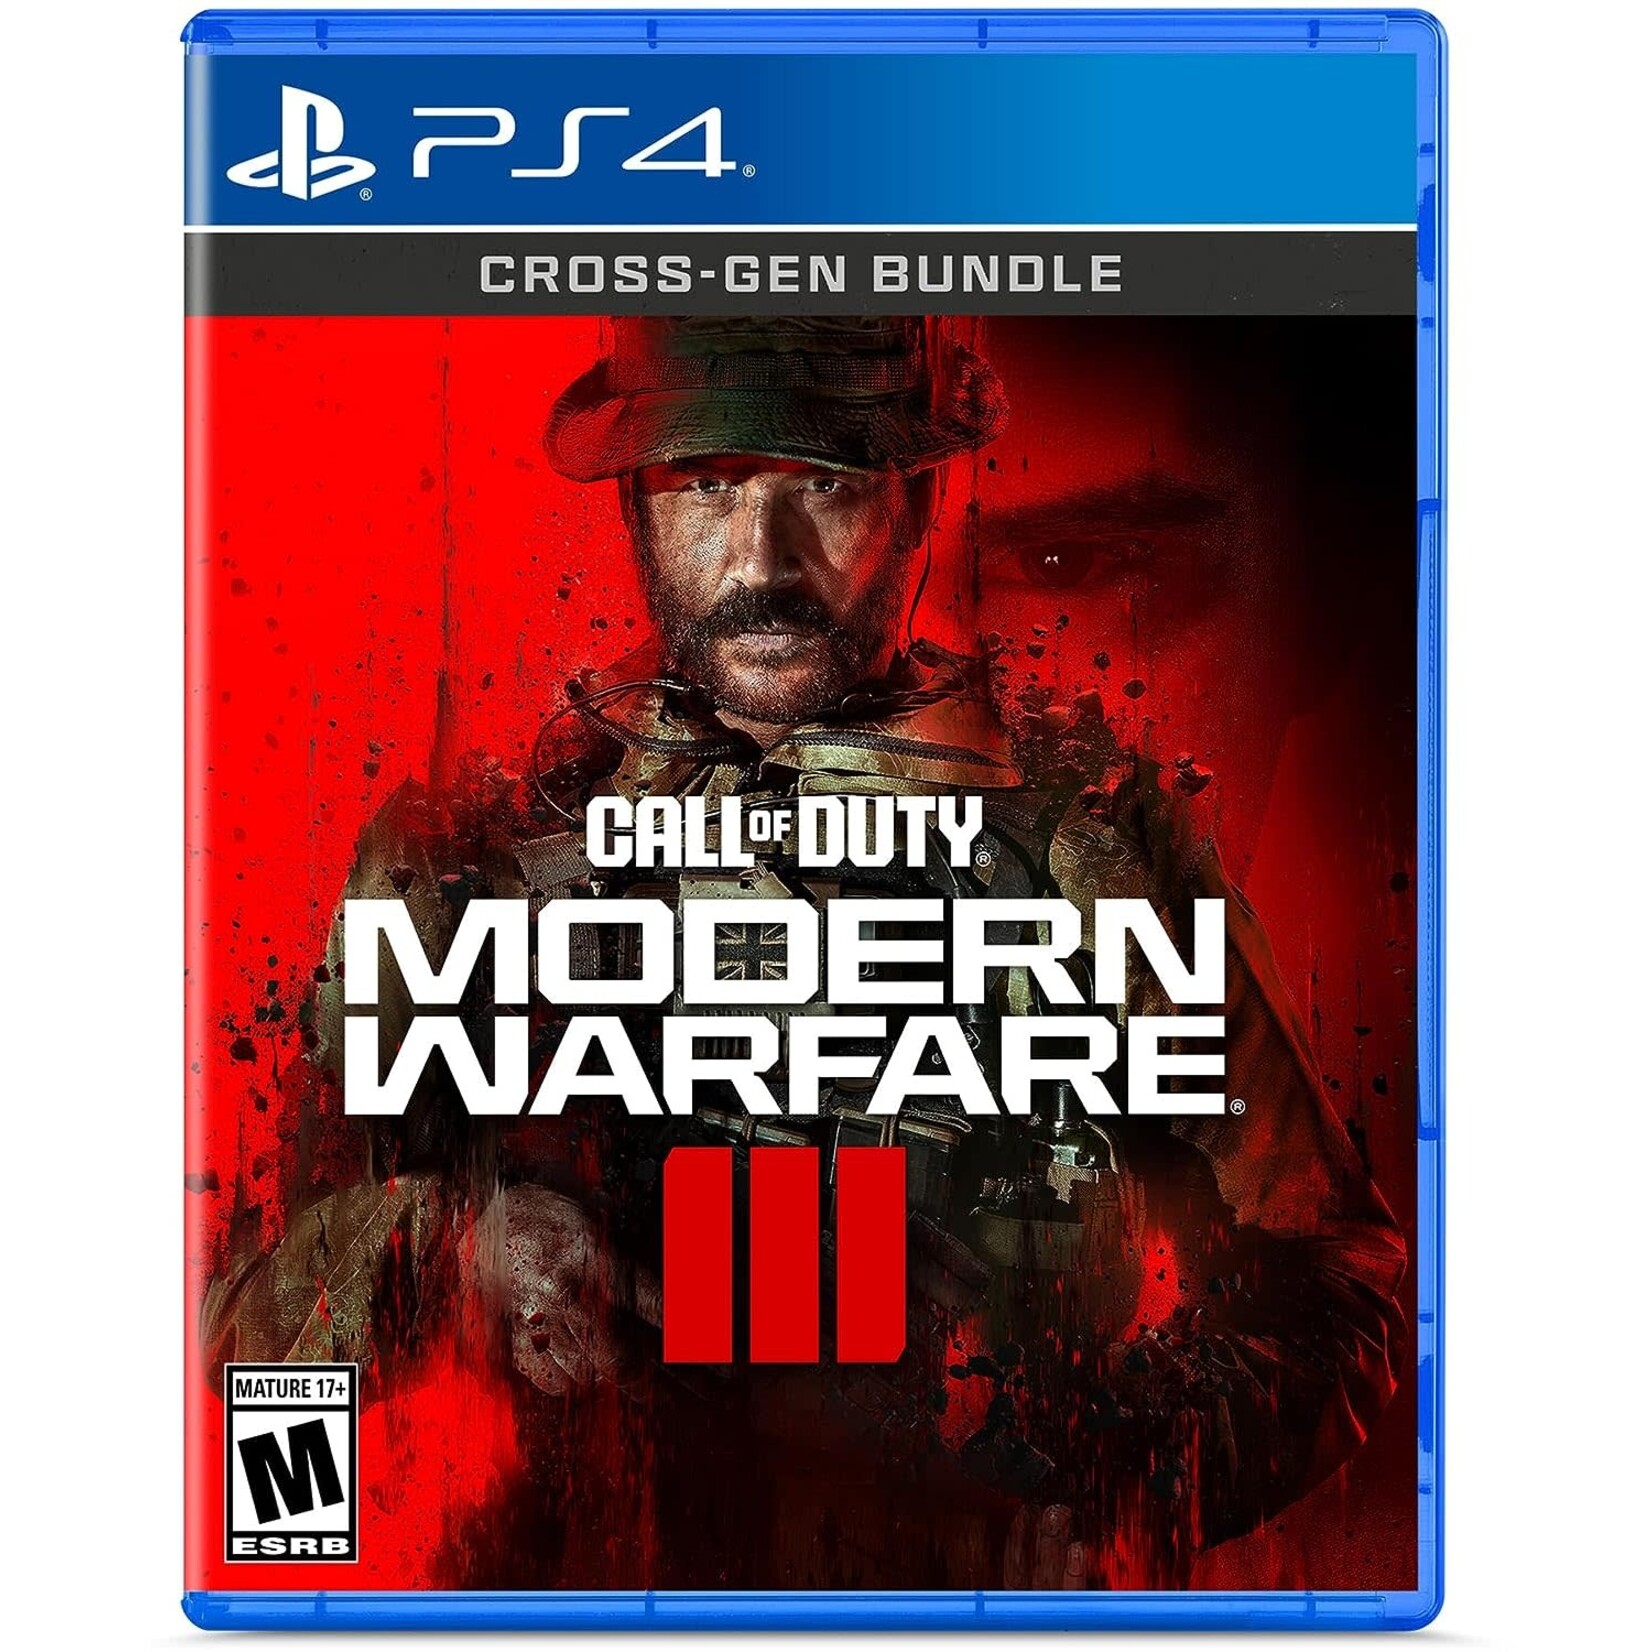 PS4-Call of Duty Modern Warfare III